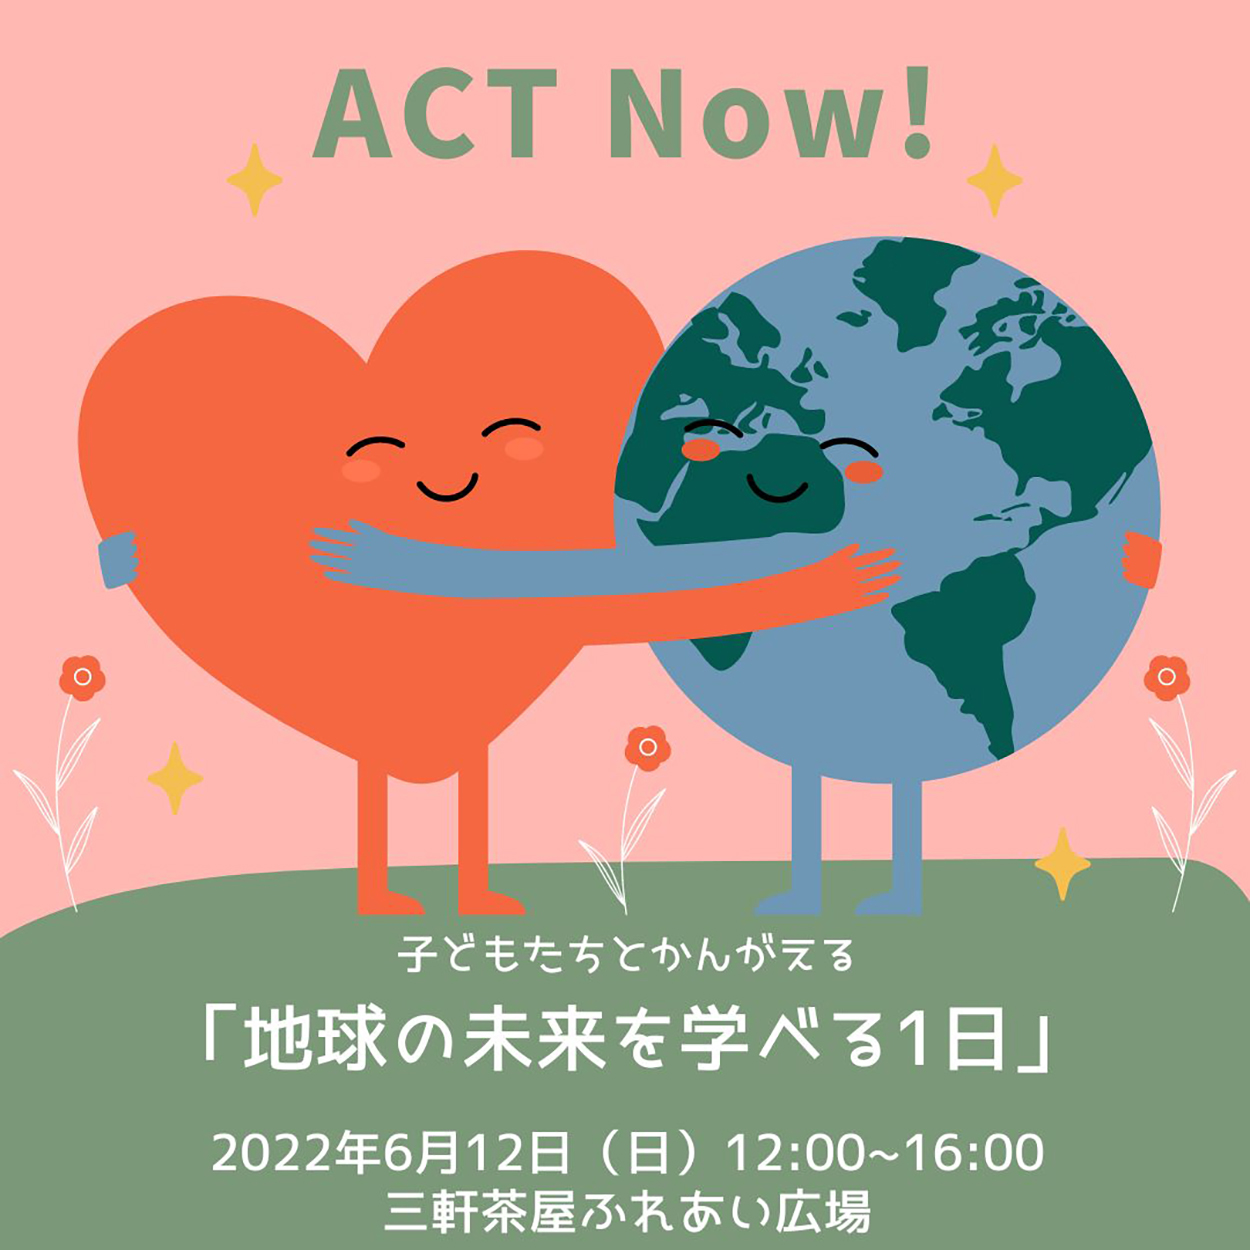 明日6月12日(日) ACT Now! 開催します